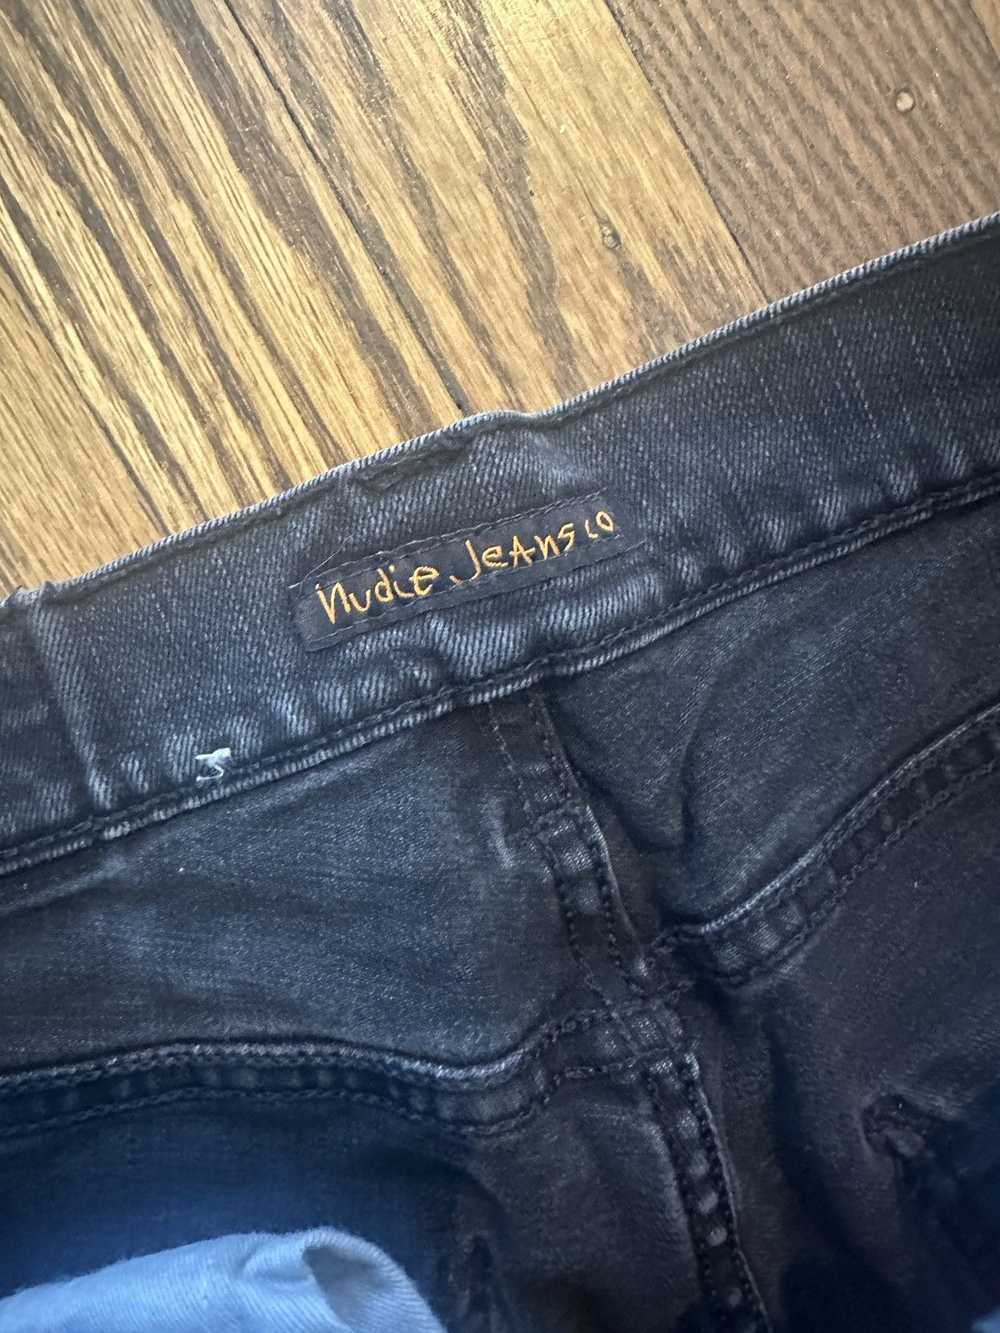 Nudie Jeans Black Nudie Jeans - image 2